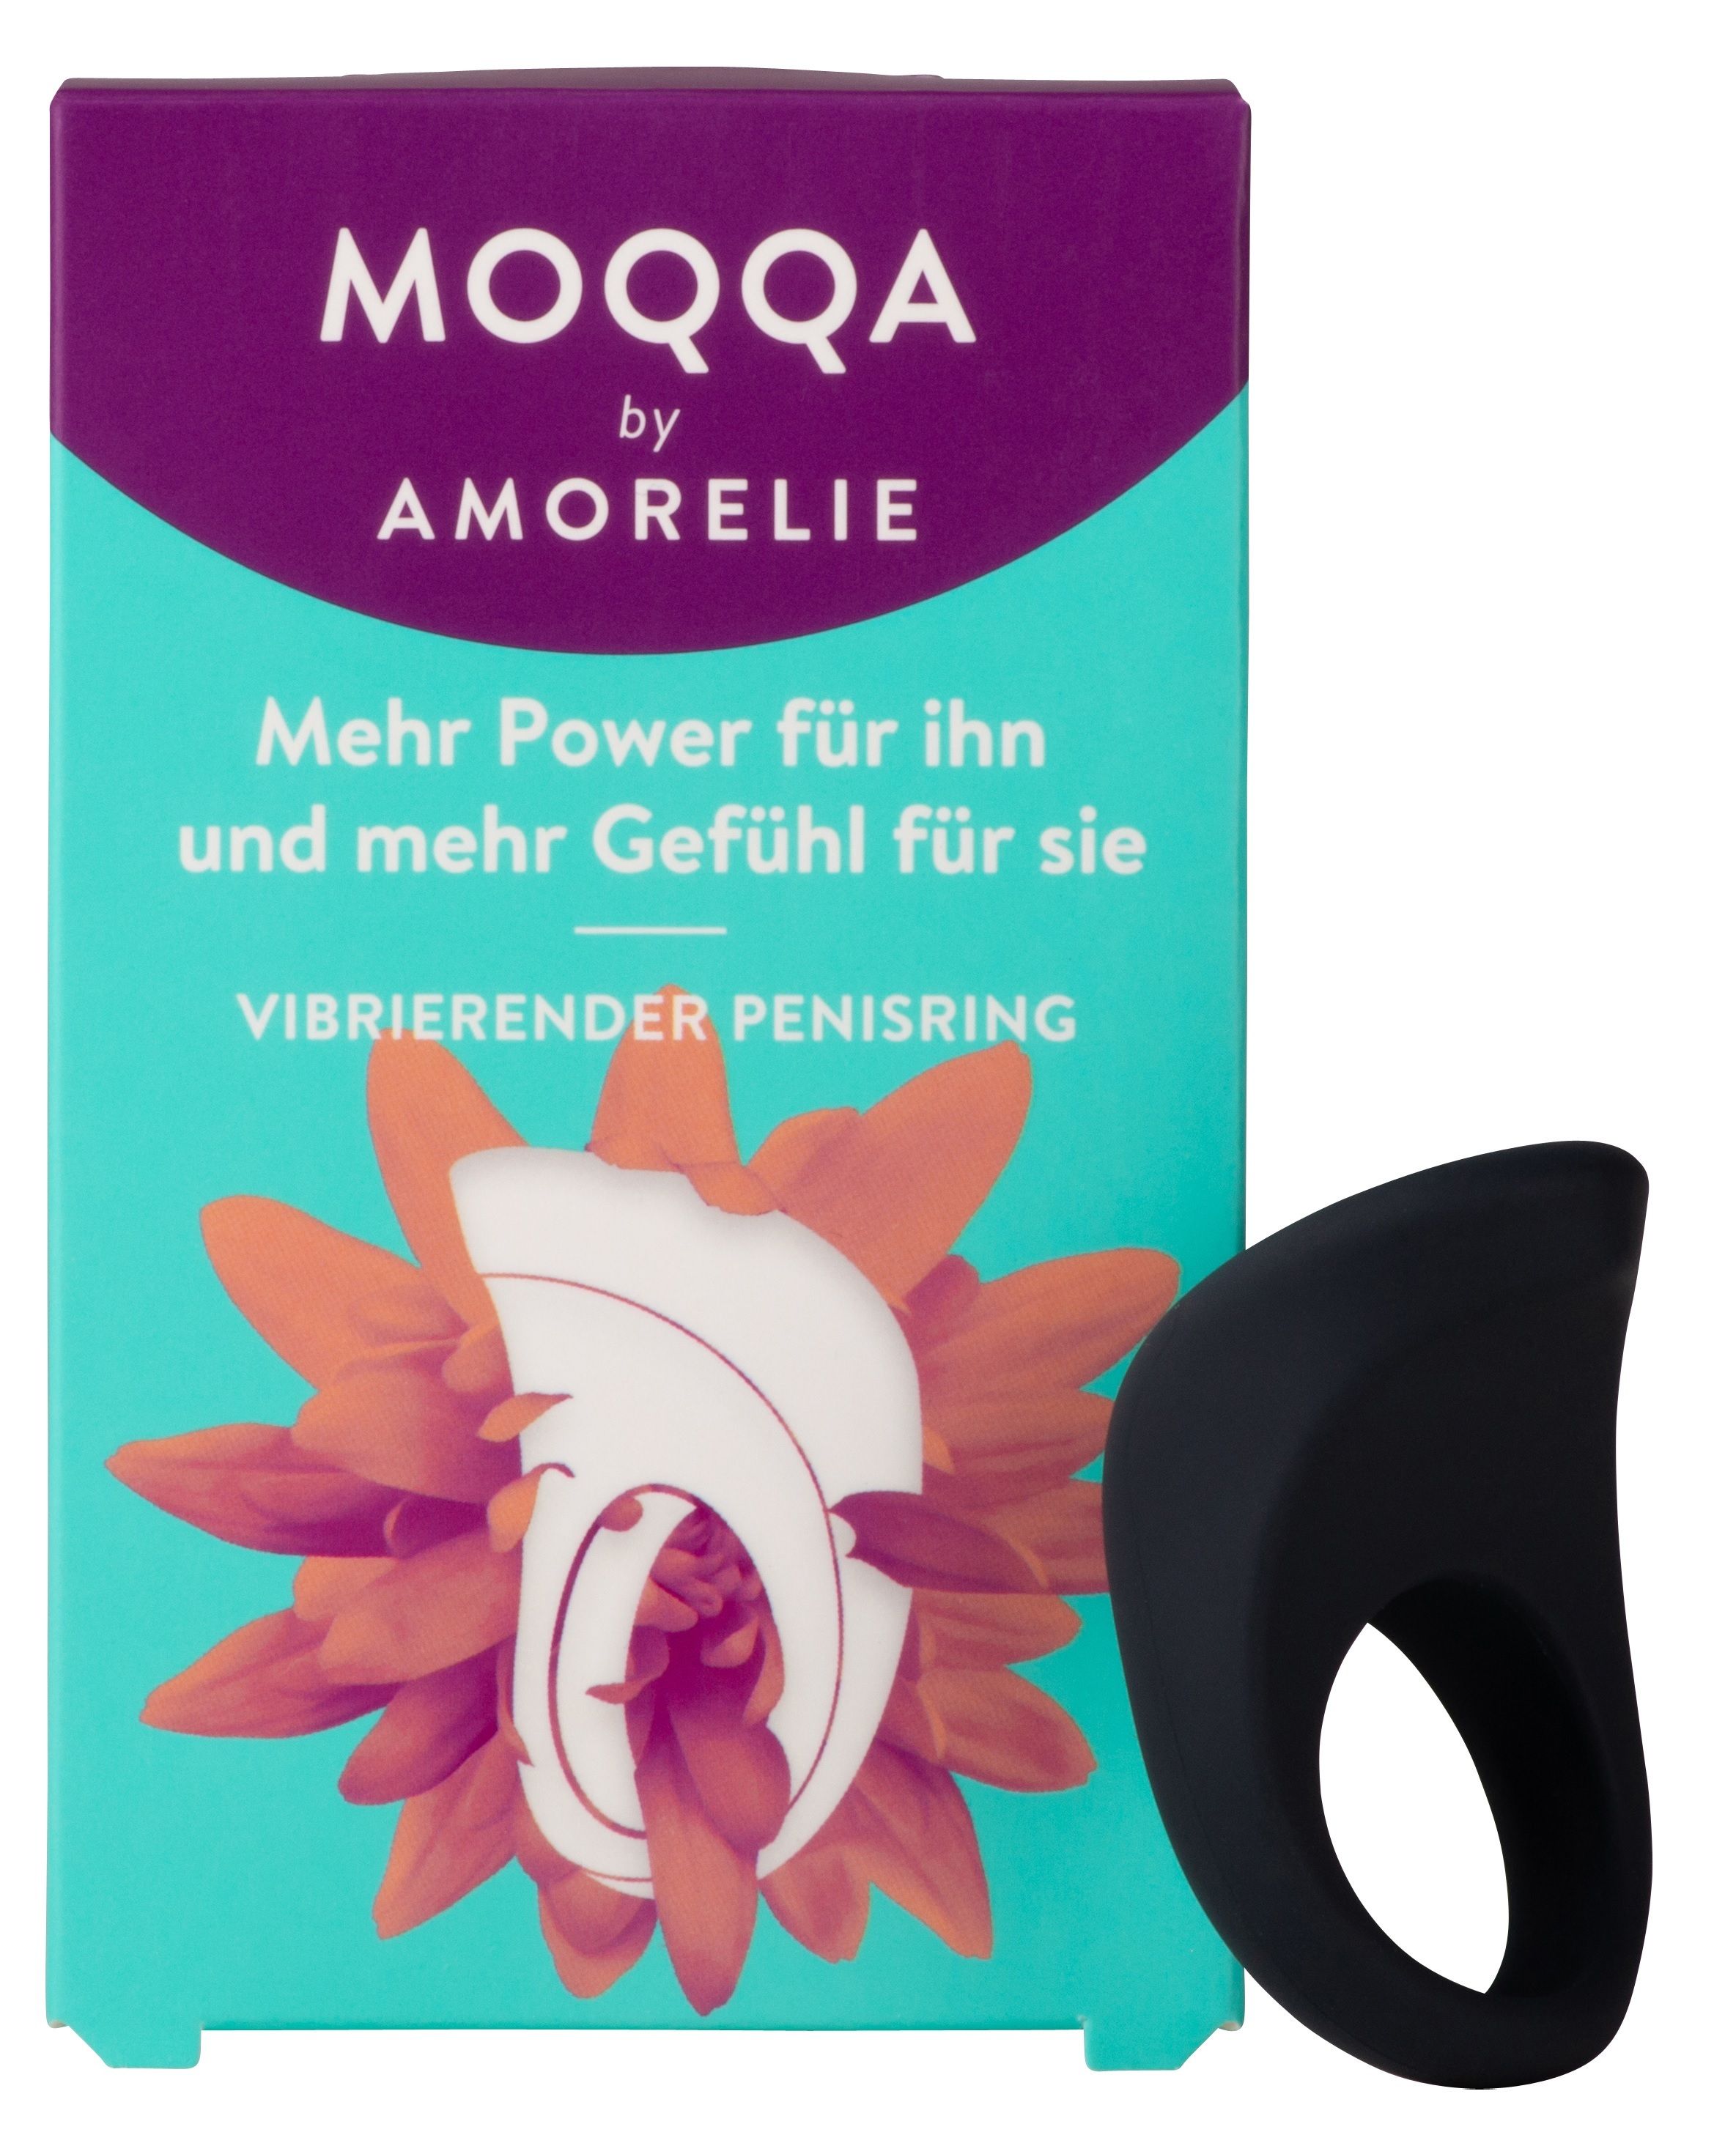 MOQQA by AMORELIE Vibrierender Penisring